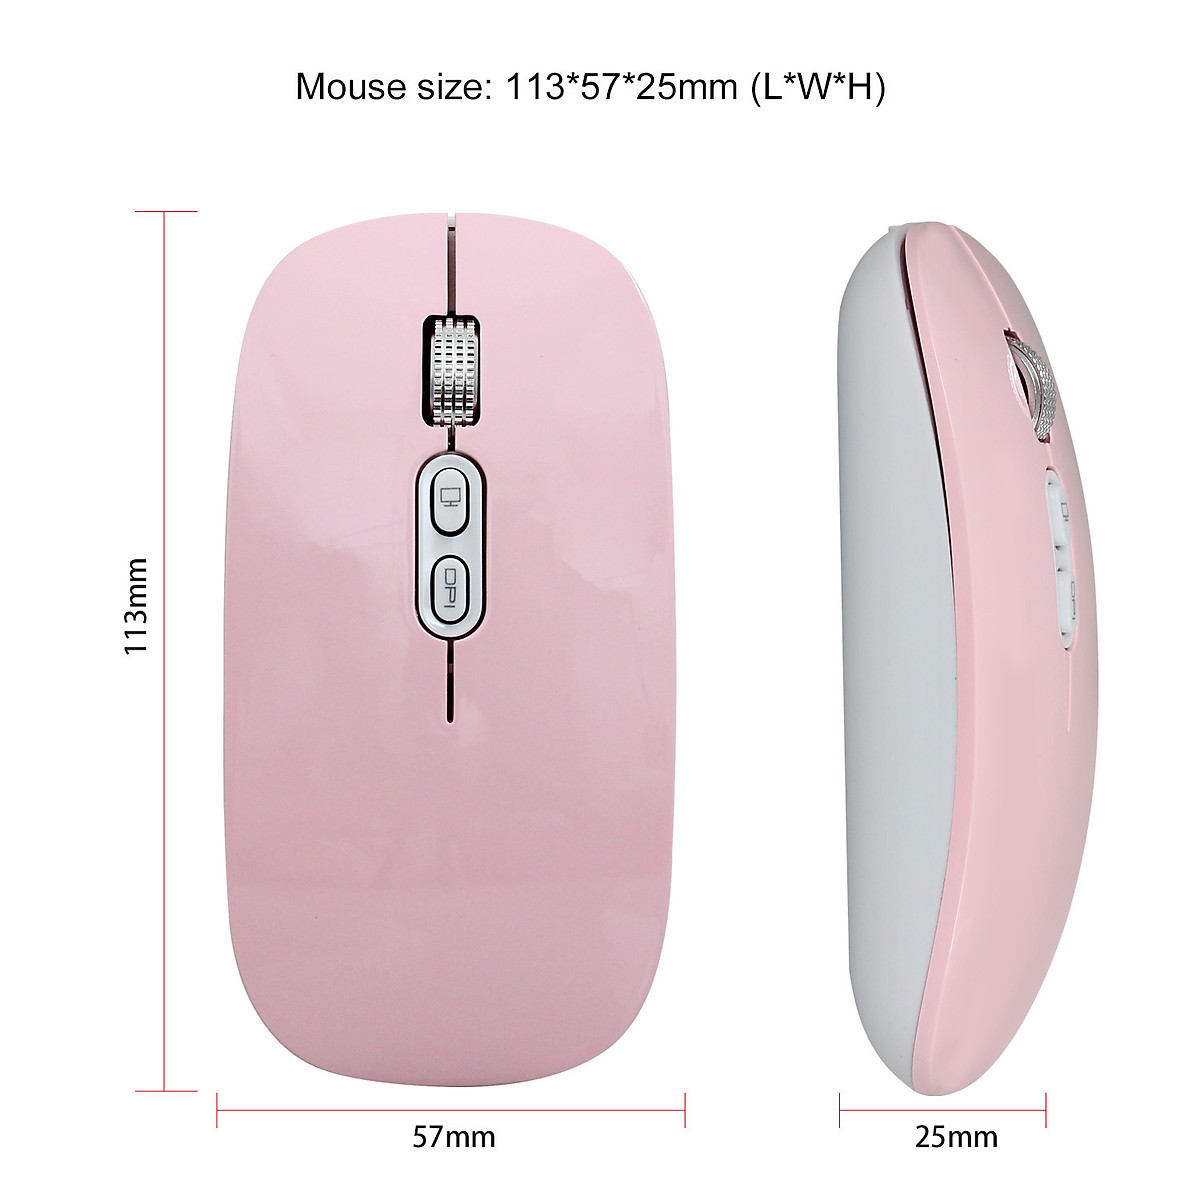 Hình ảnh Chuột không dây Pix-link  M103 hồng 2.4G sạc điện chống ồn khoảng cách tín hiệu 10m - Hàng chính hãng / Hàng nhập khẩu